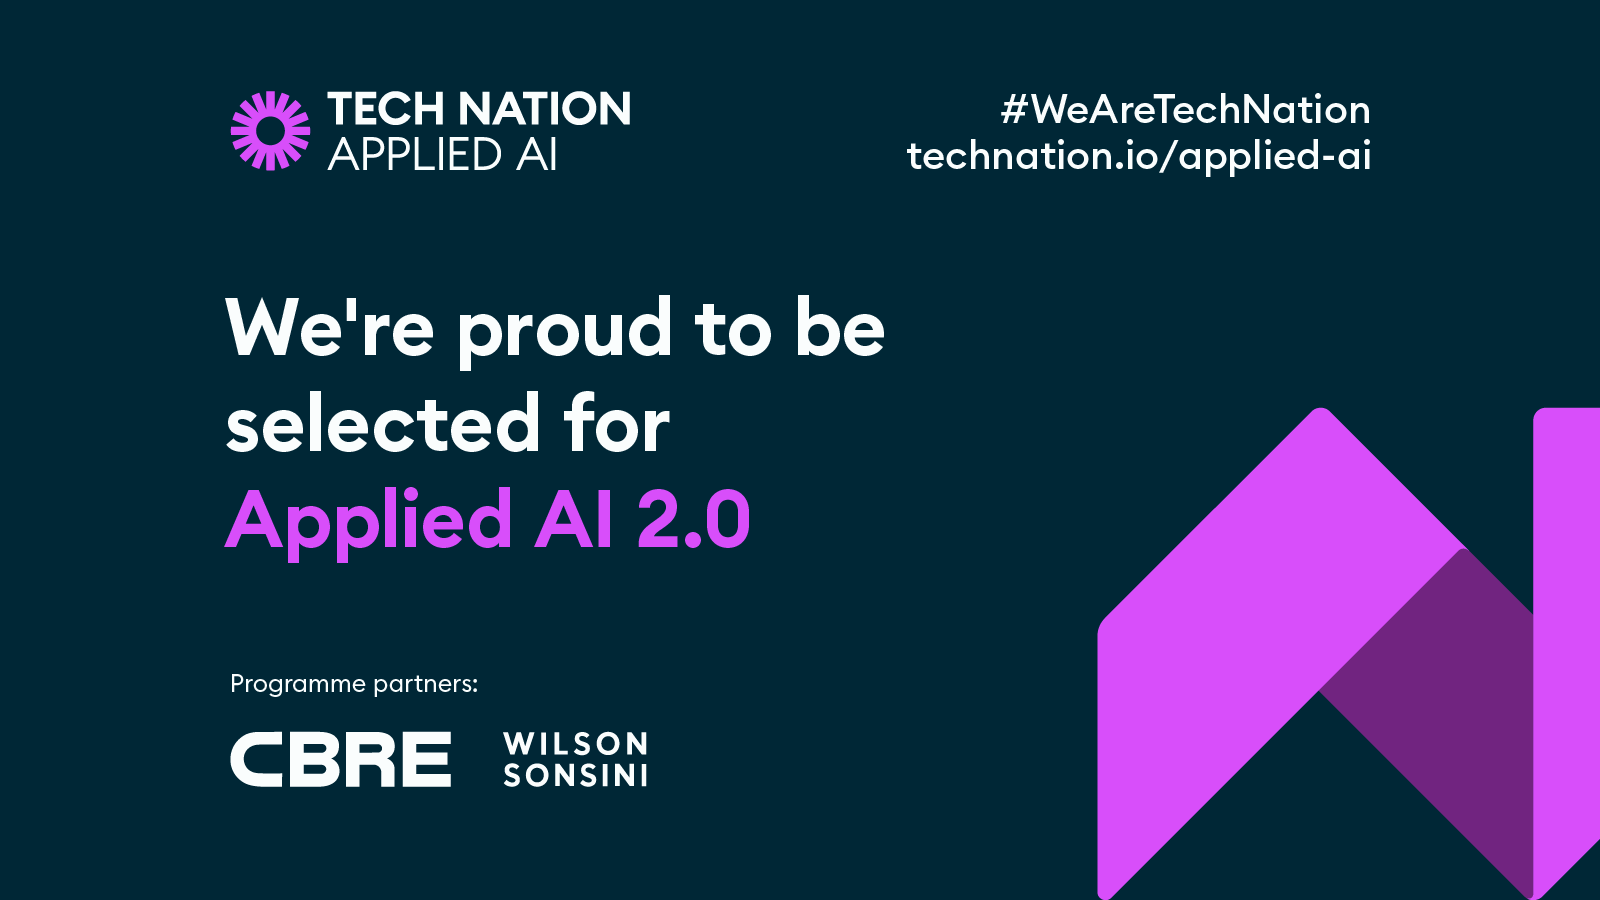 SATAVIA joins Tech Nation’s Applied AI 2.0